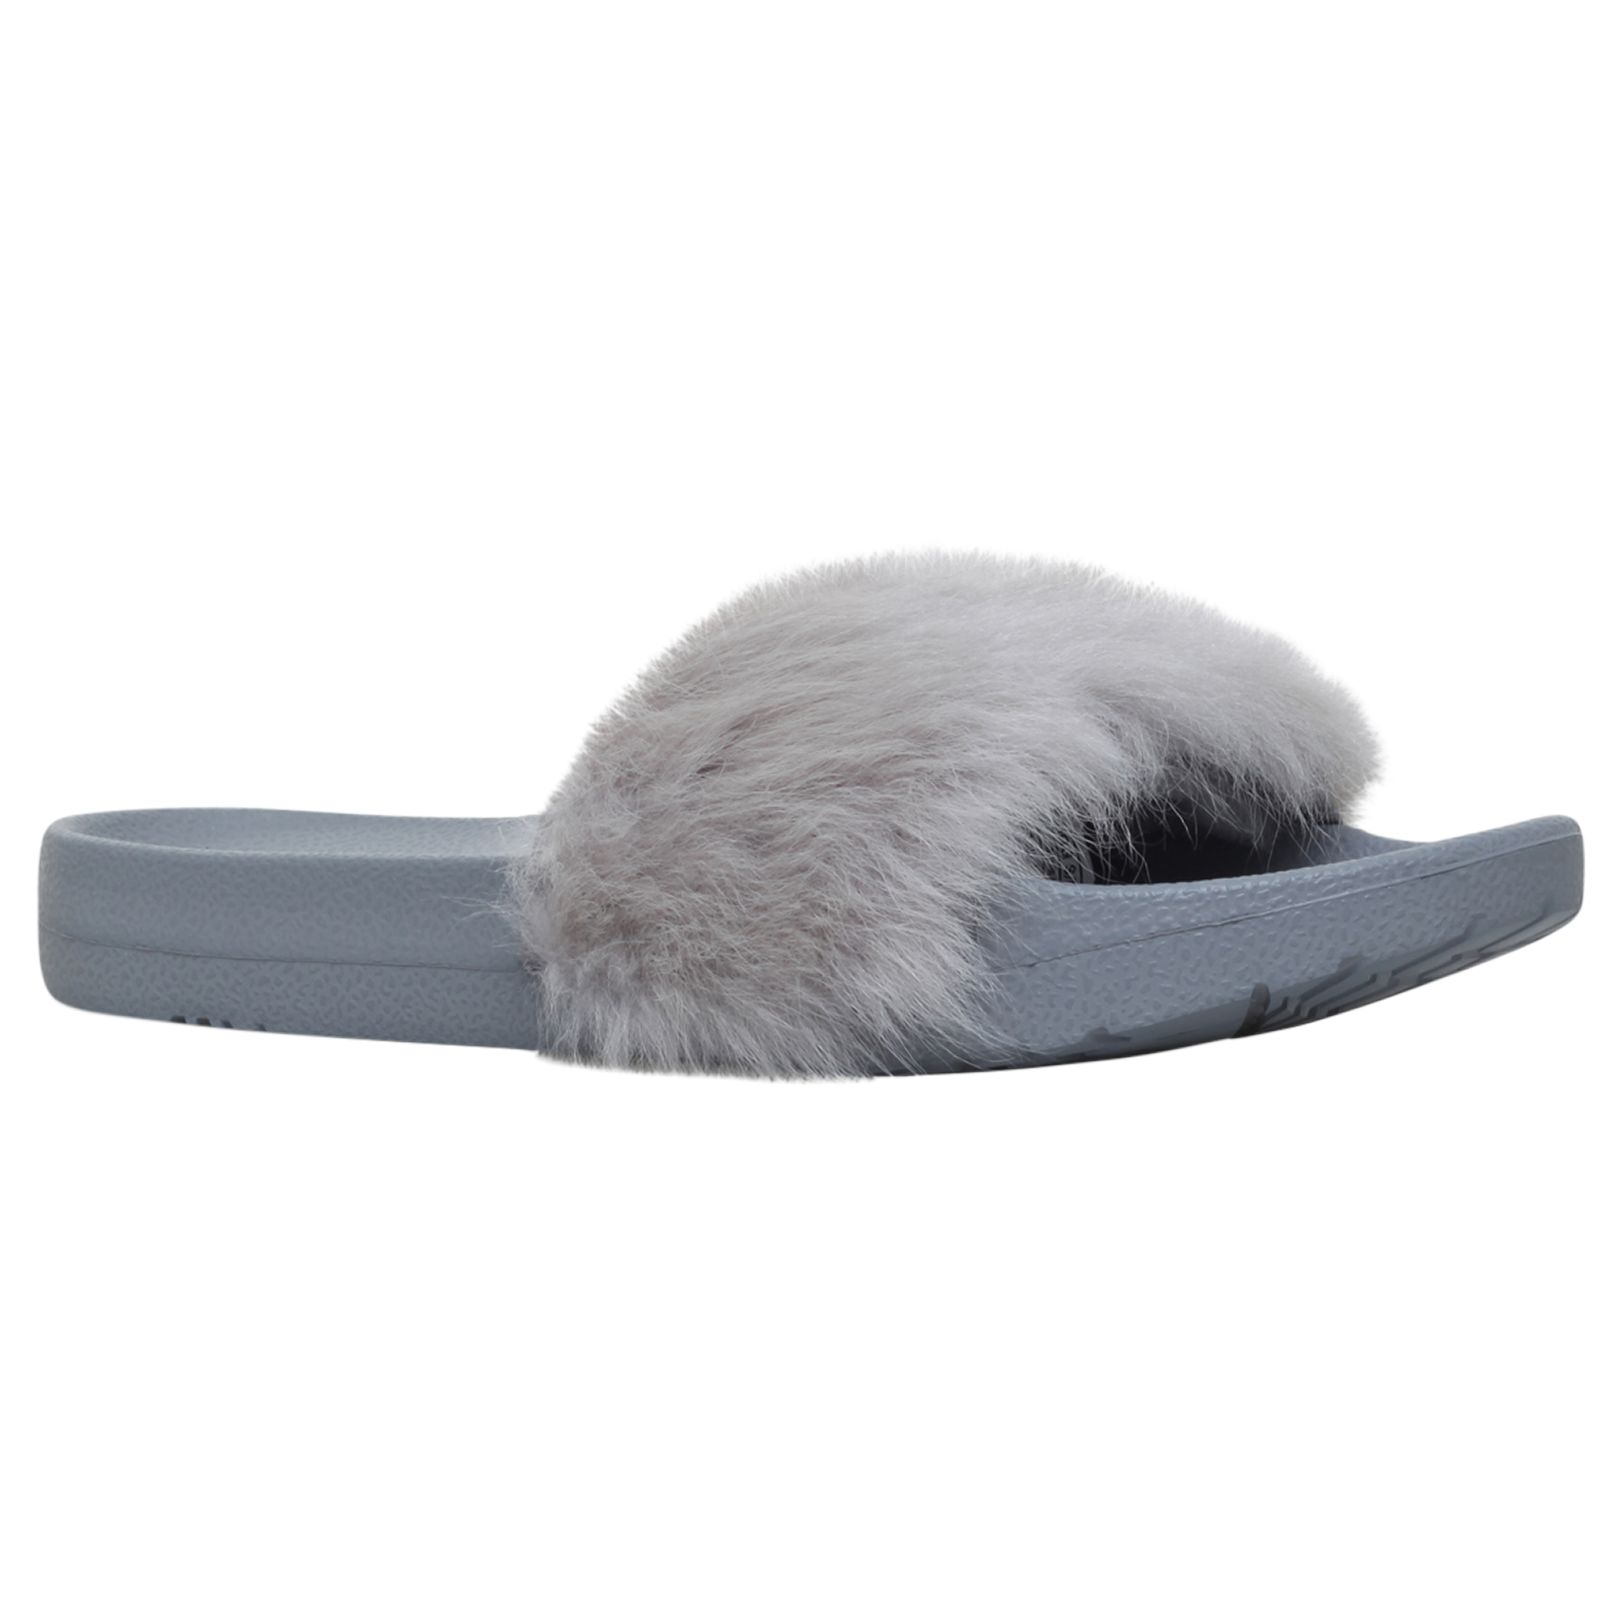 UGG Royale Sheepskin Slider Sandals, Grey, 8